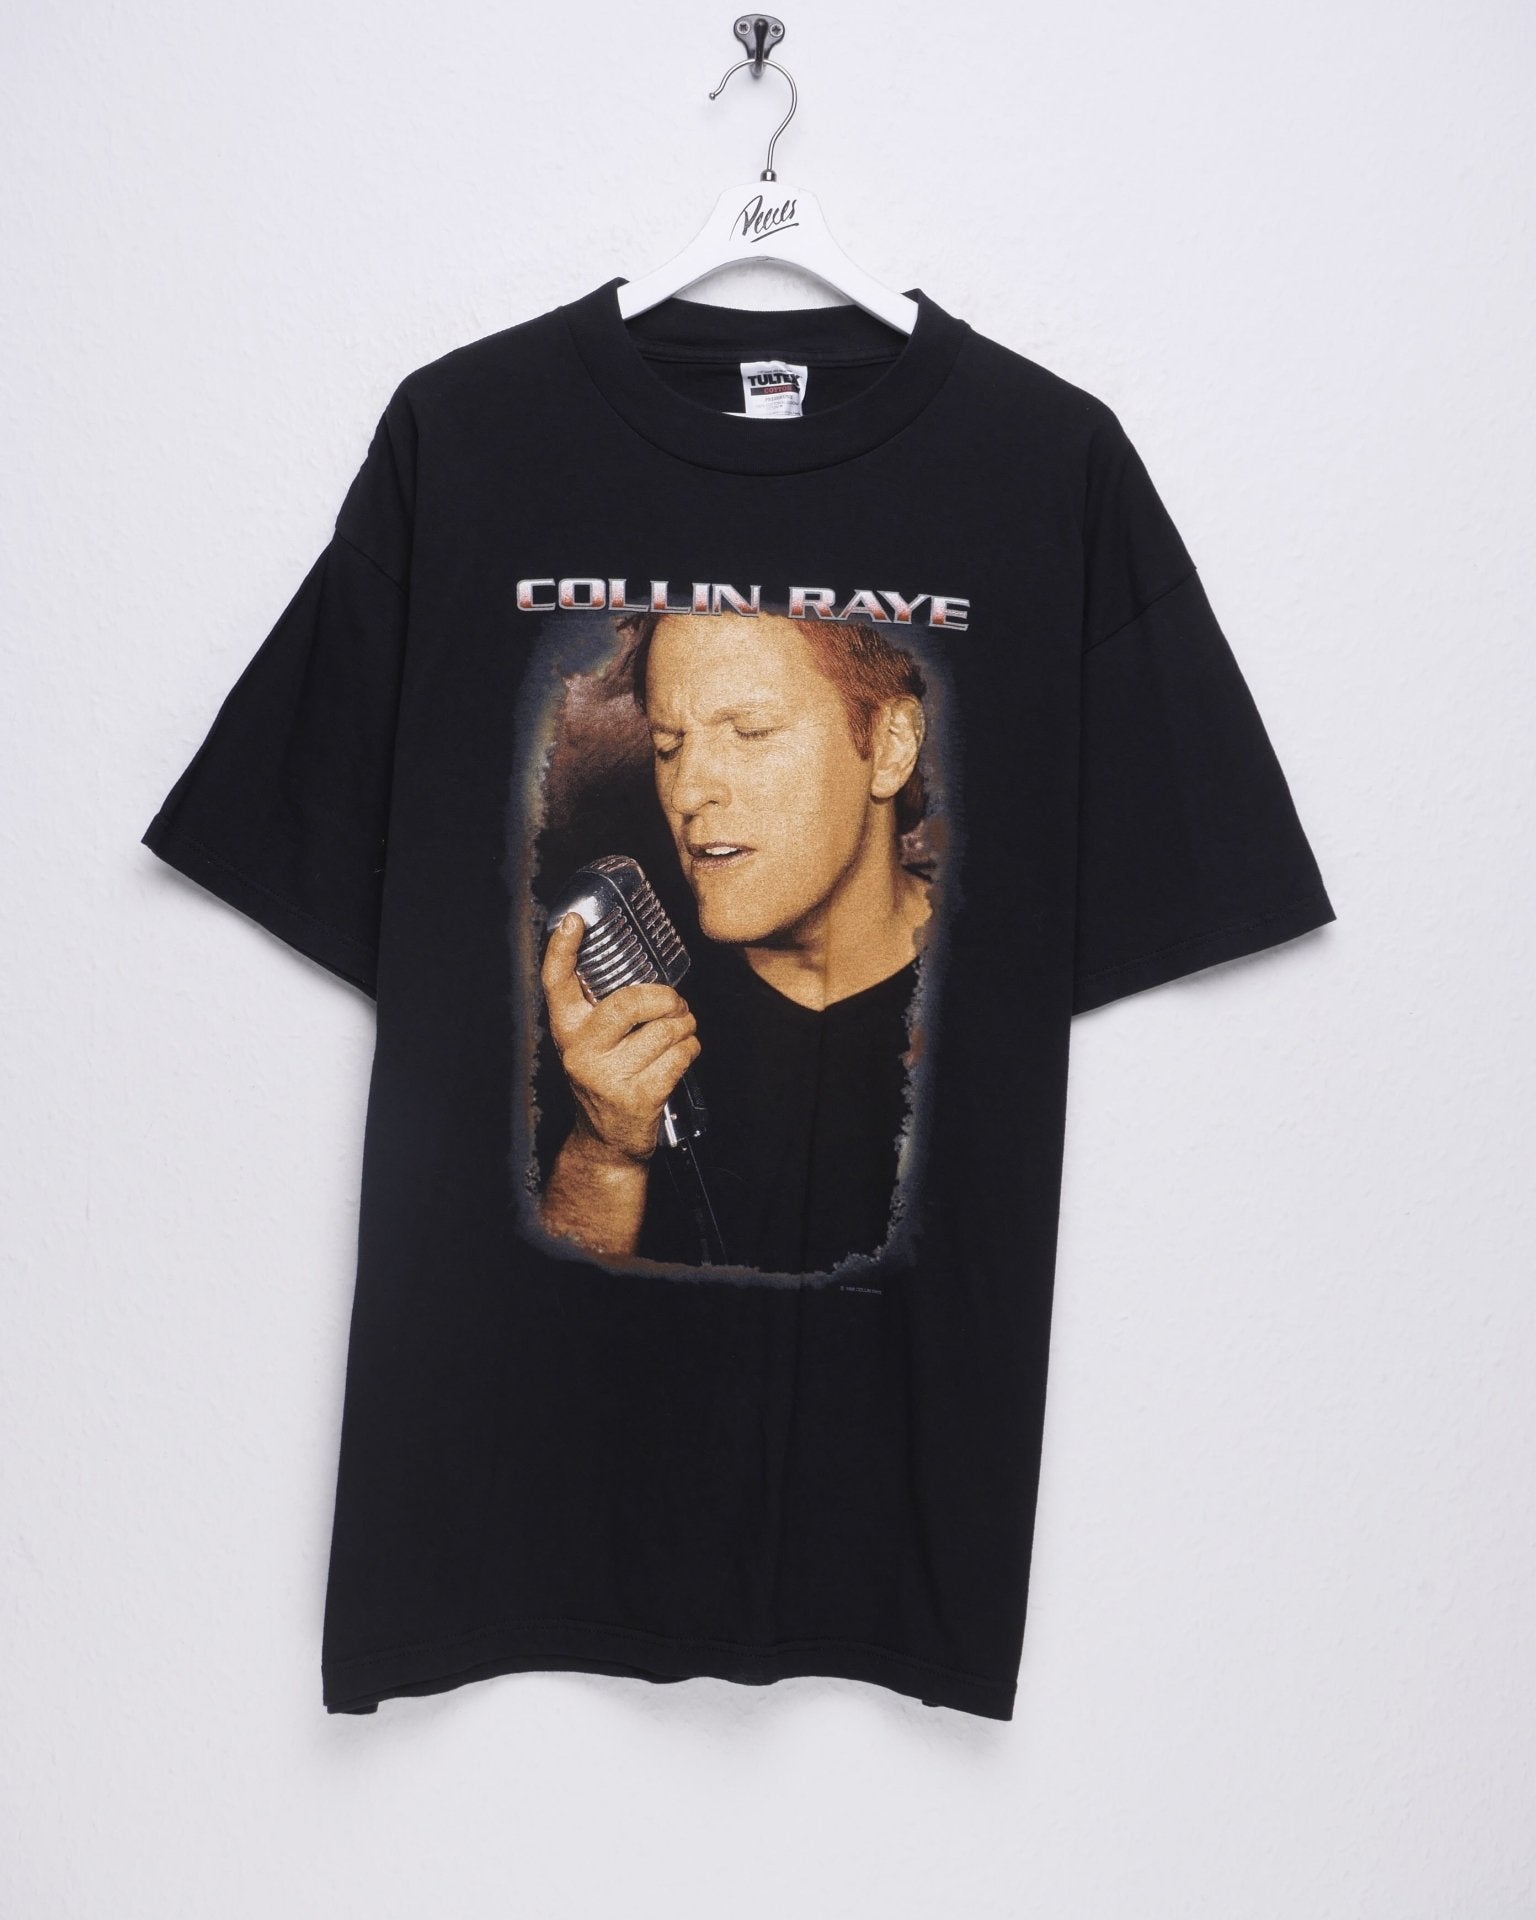 Collin Raye printed Graphic black Shirt - Peeces